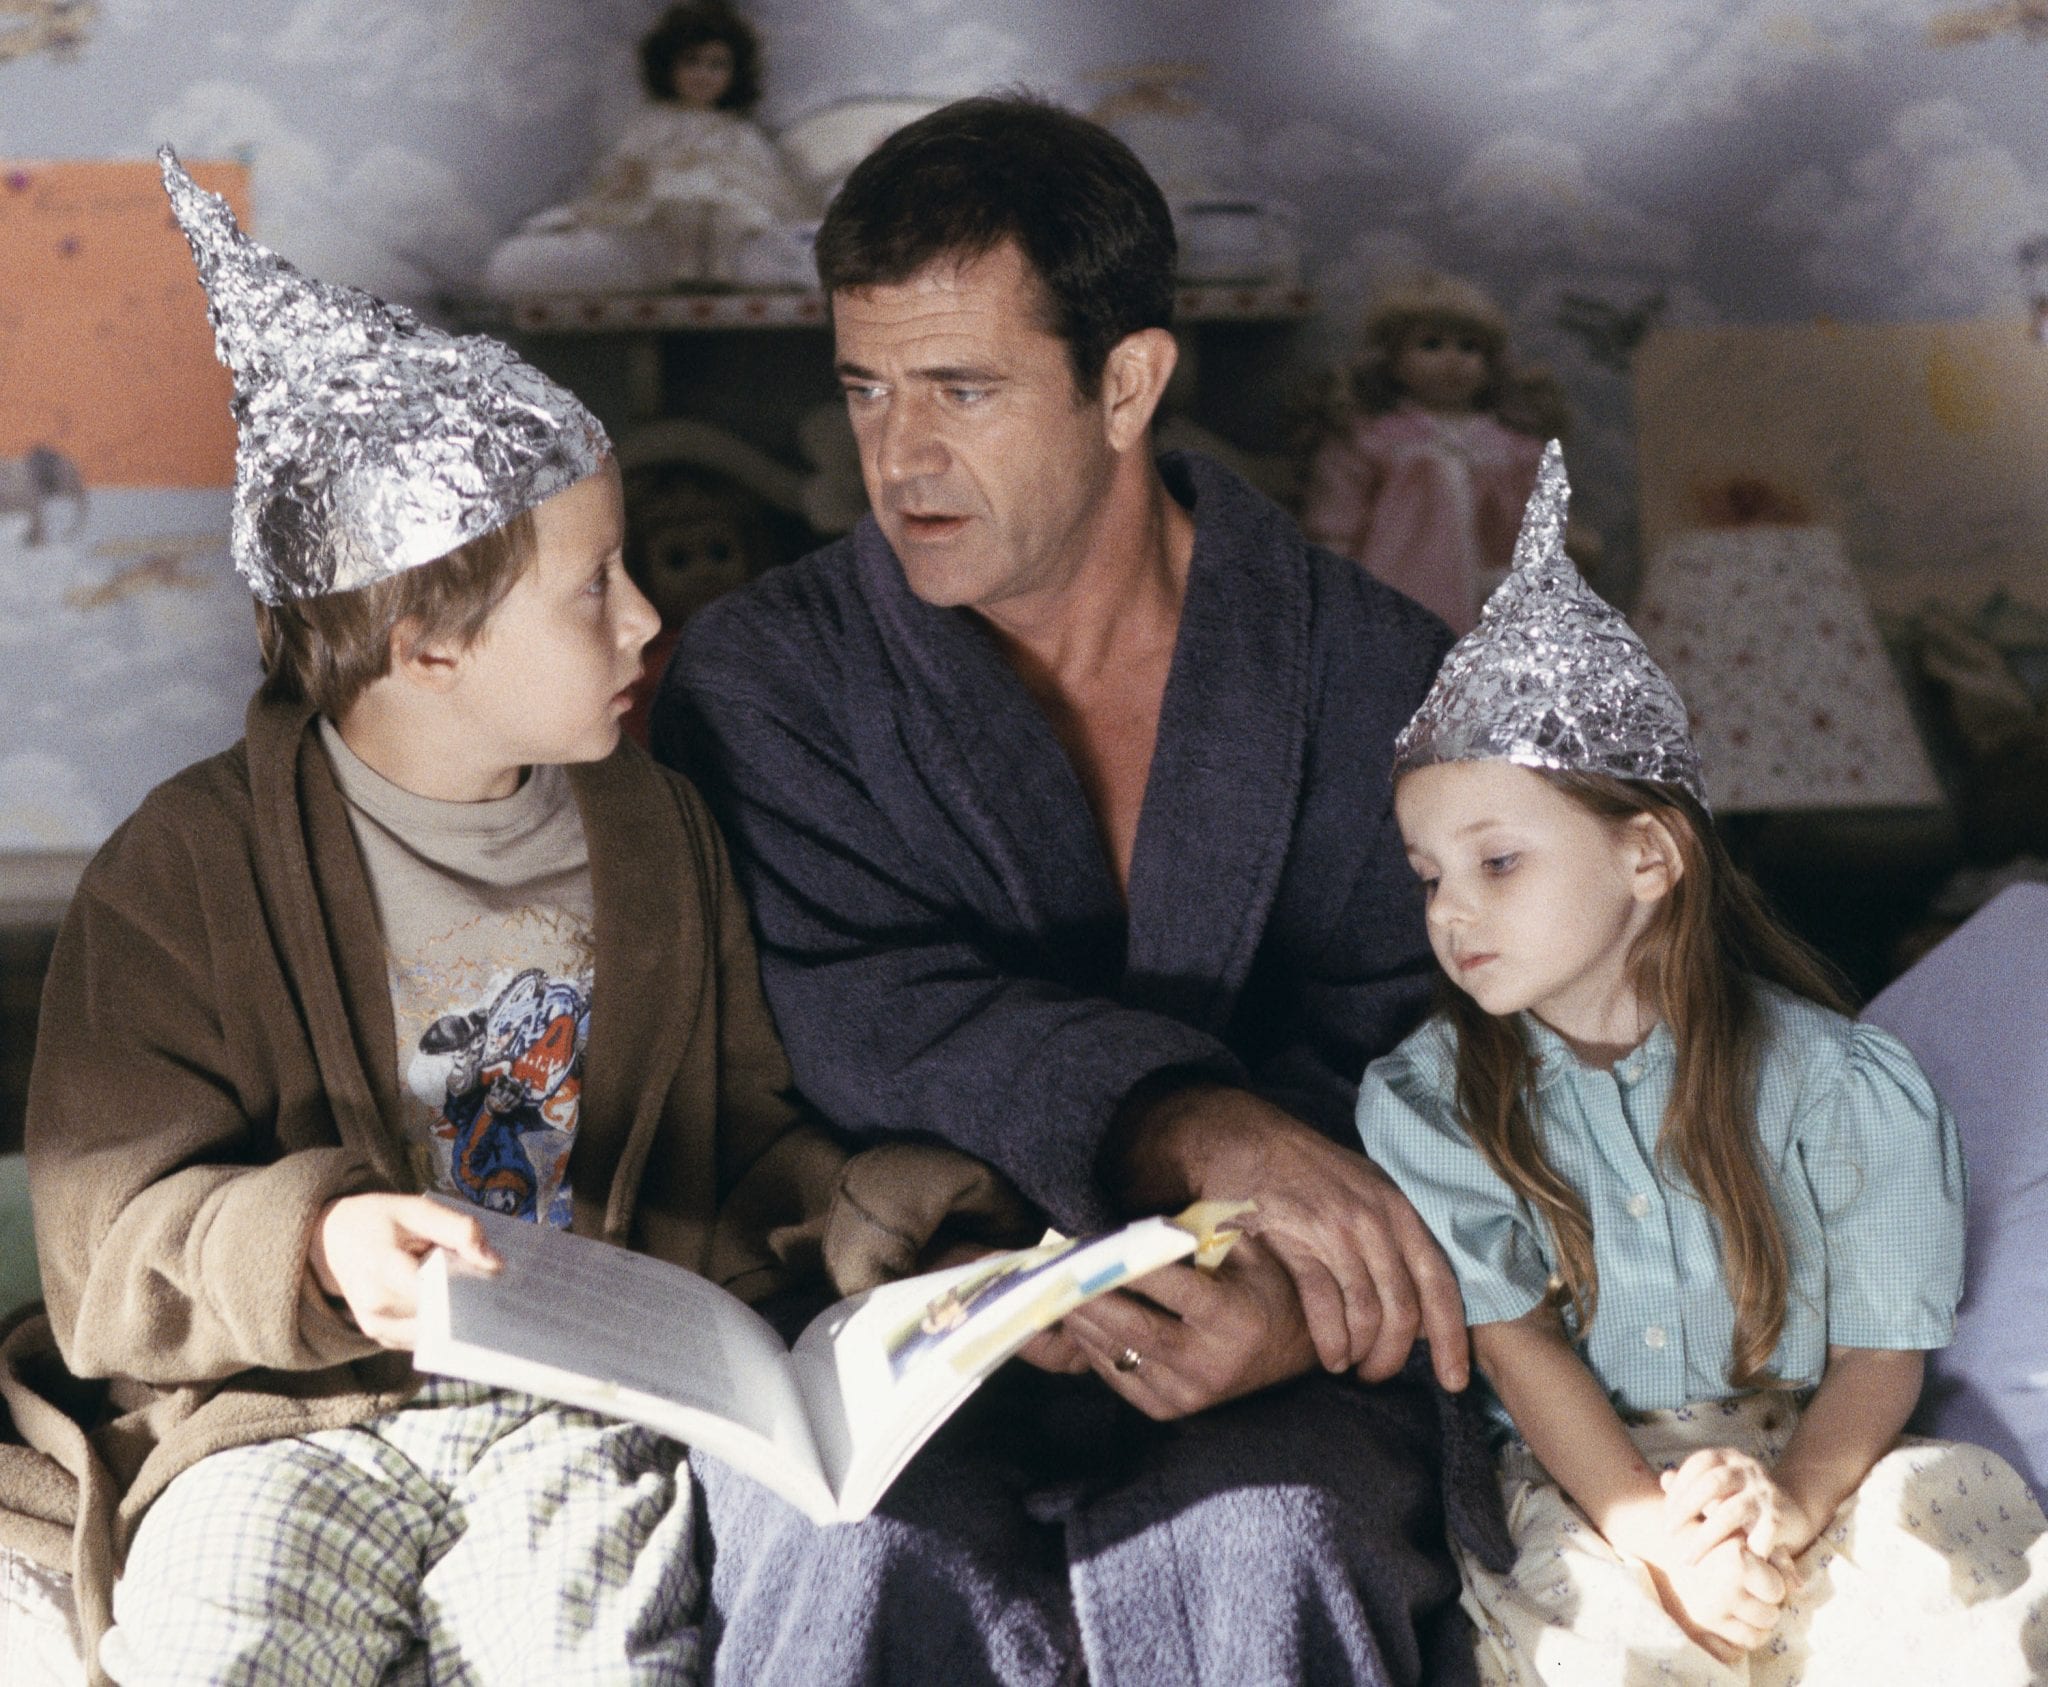 Los hijos del personaje interpretado por Mel Gibson se protegen de los alienígenas con cascos de papel de aluminio, en 'Señales', la película de M. Night Shyamalan.